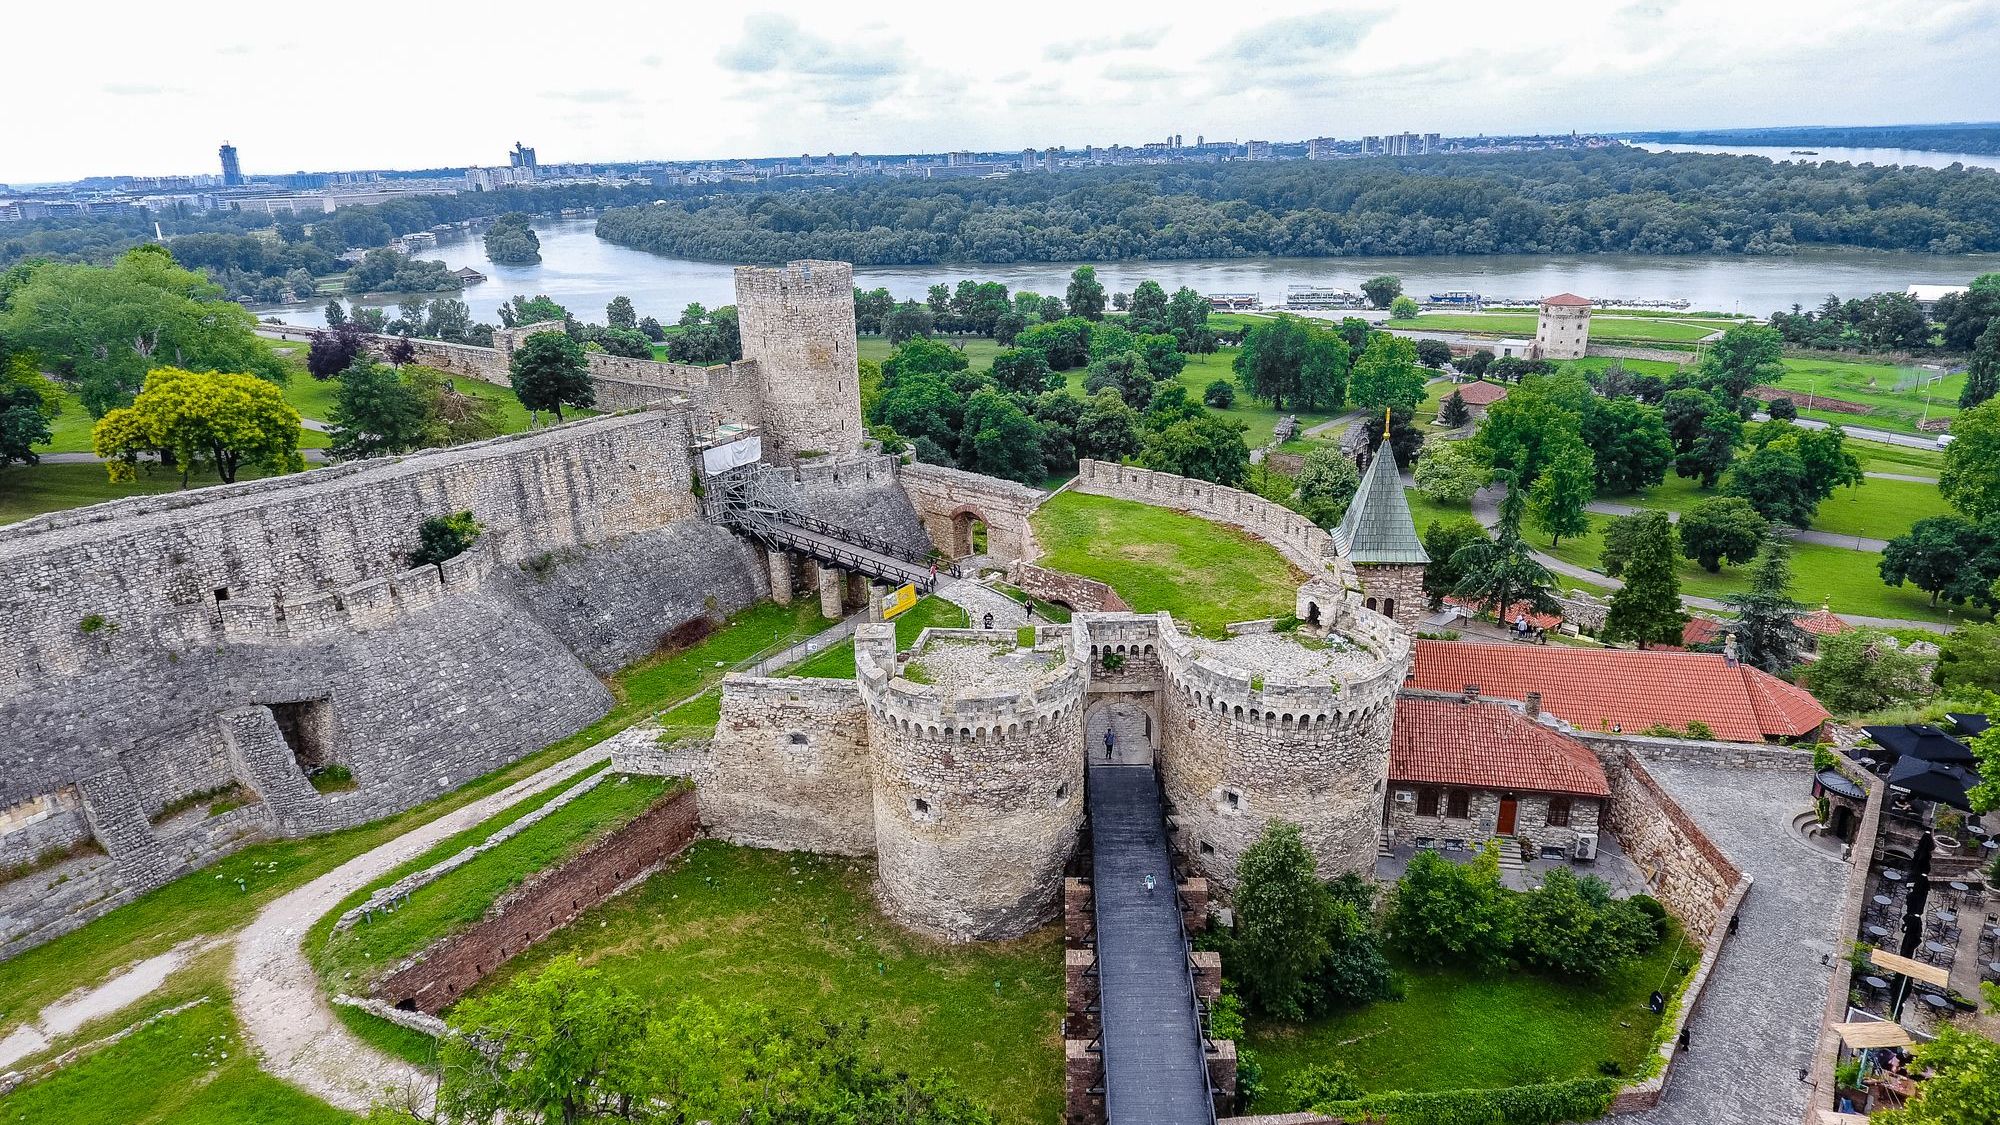 Kalemegdan Fortress in Belgrade, Serbia.